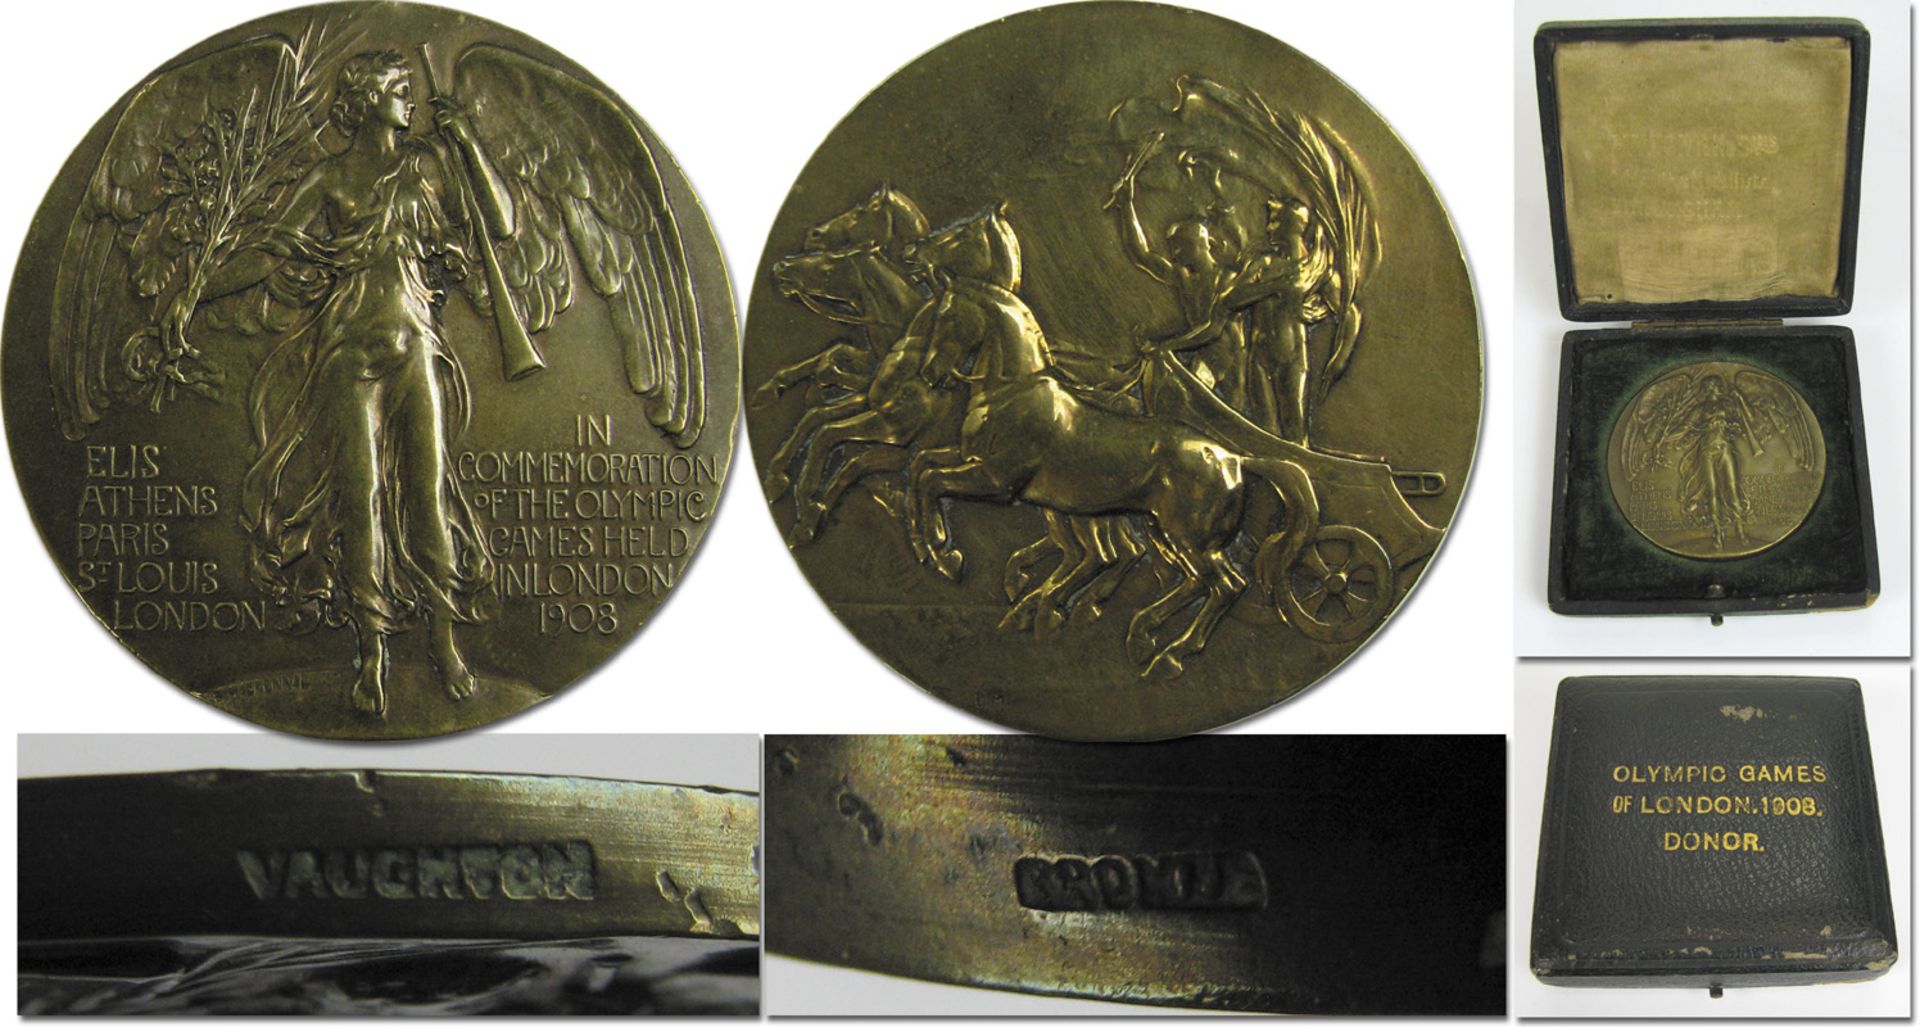 Teilnehmermedaille 1908 - Offizielle Teilnehmermedaille der Olympischen Spiele 1908 „In